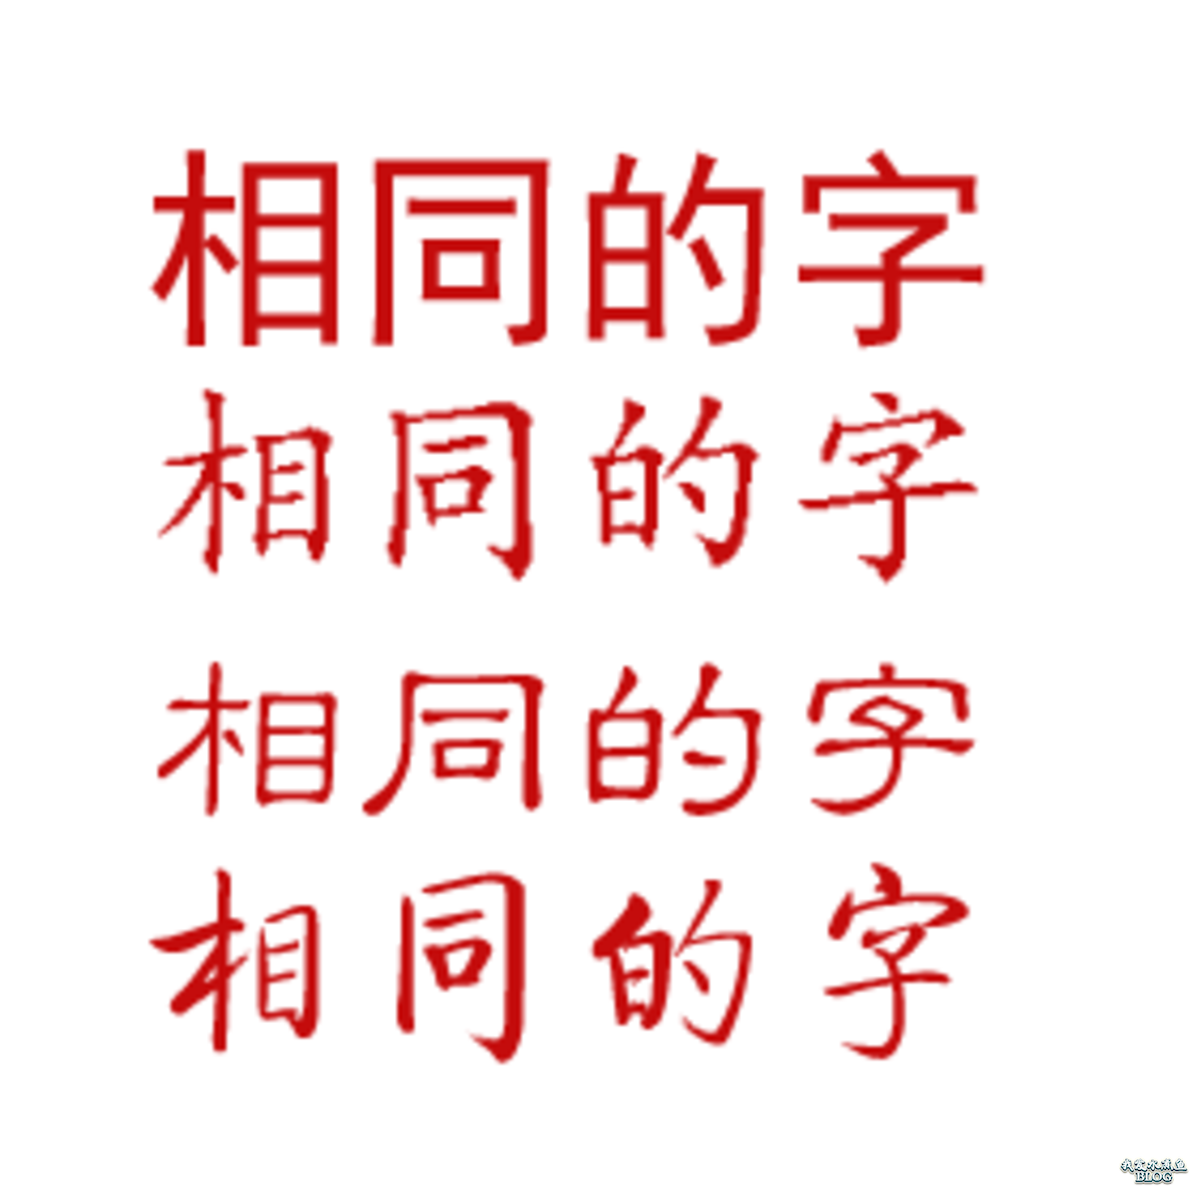 中文字体的格式